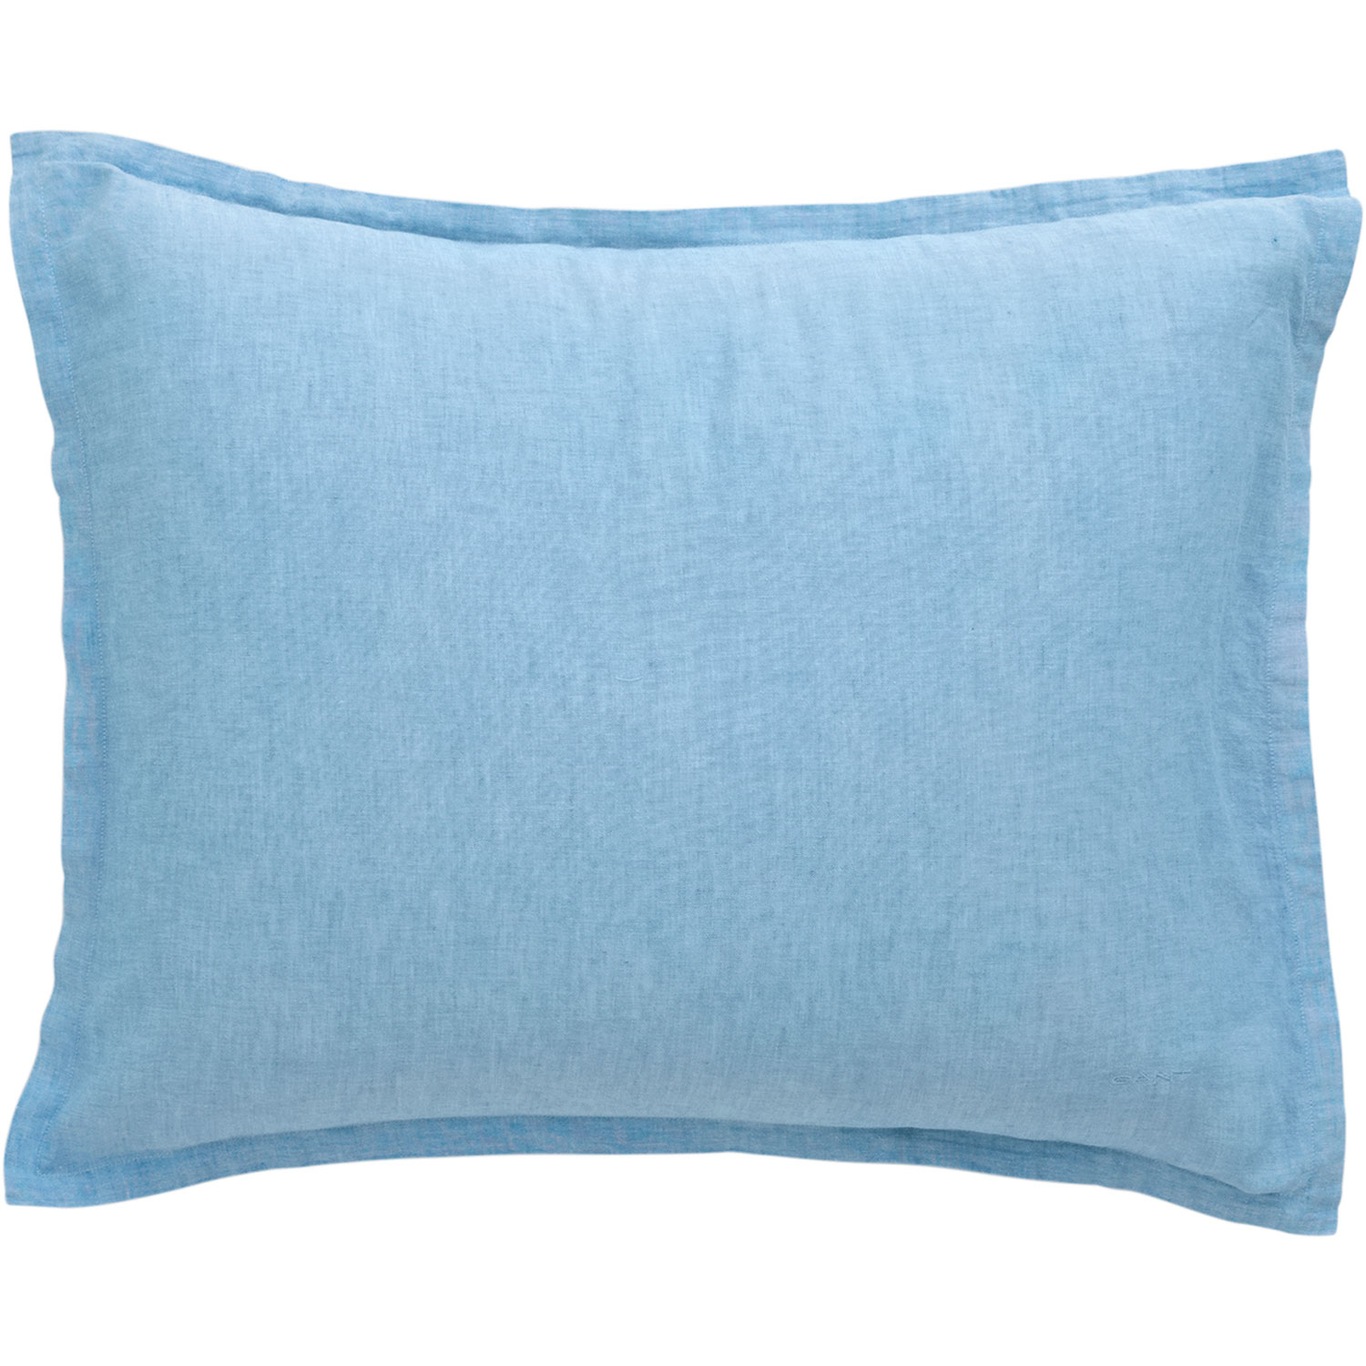 Cotton Linen Pillowcase 50x60 cm, Silver Lake Blue